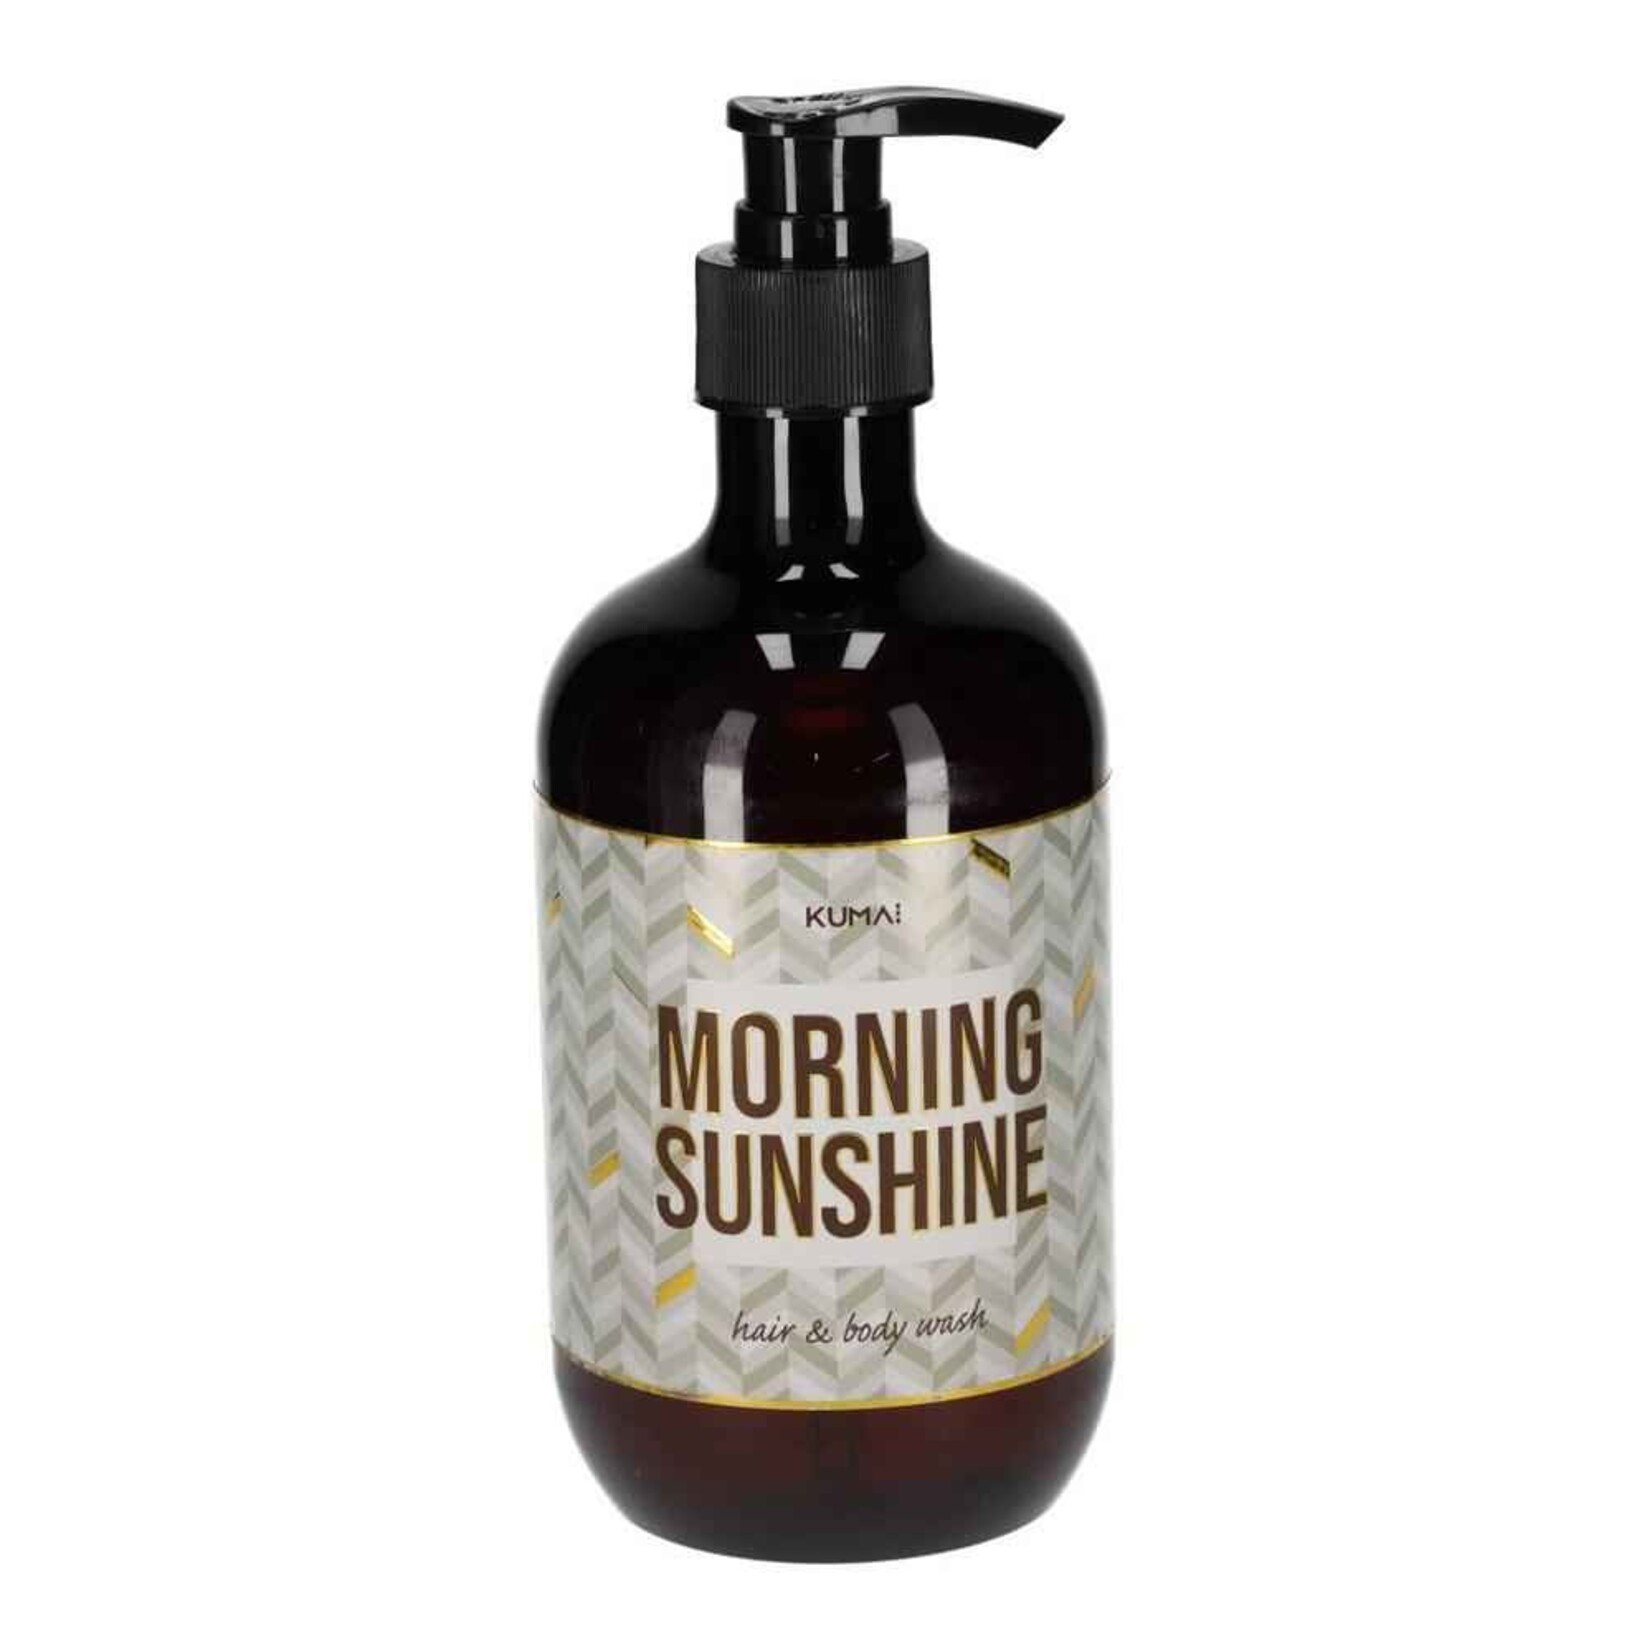 Hair & Body Wash - "Morning sunshine" - 475ml